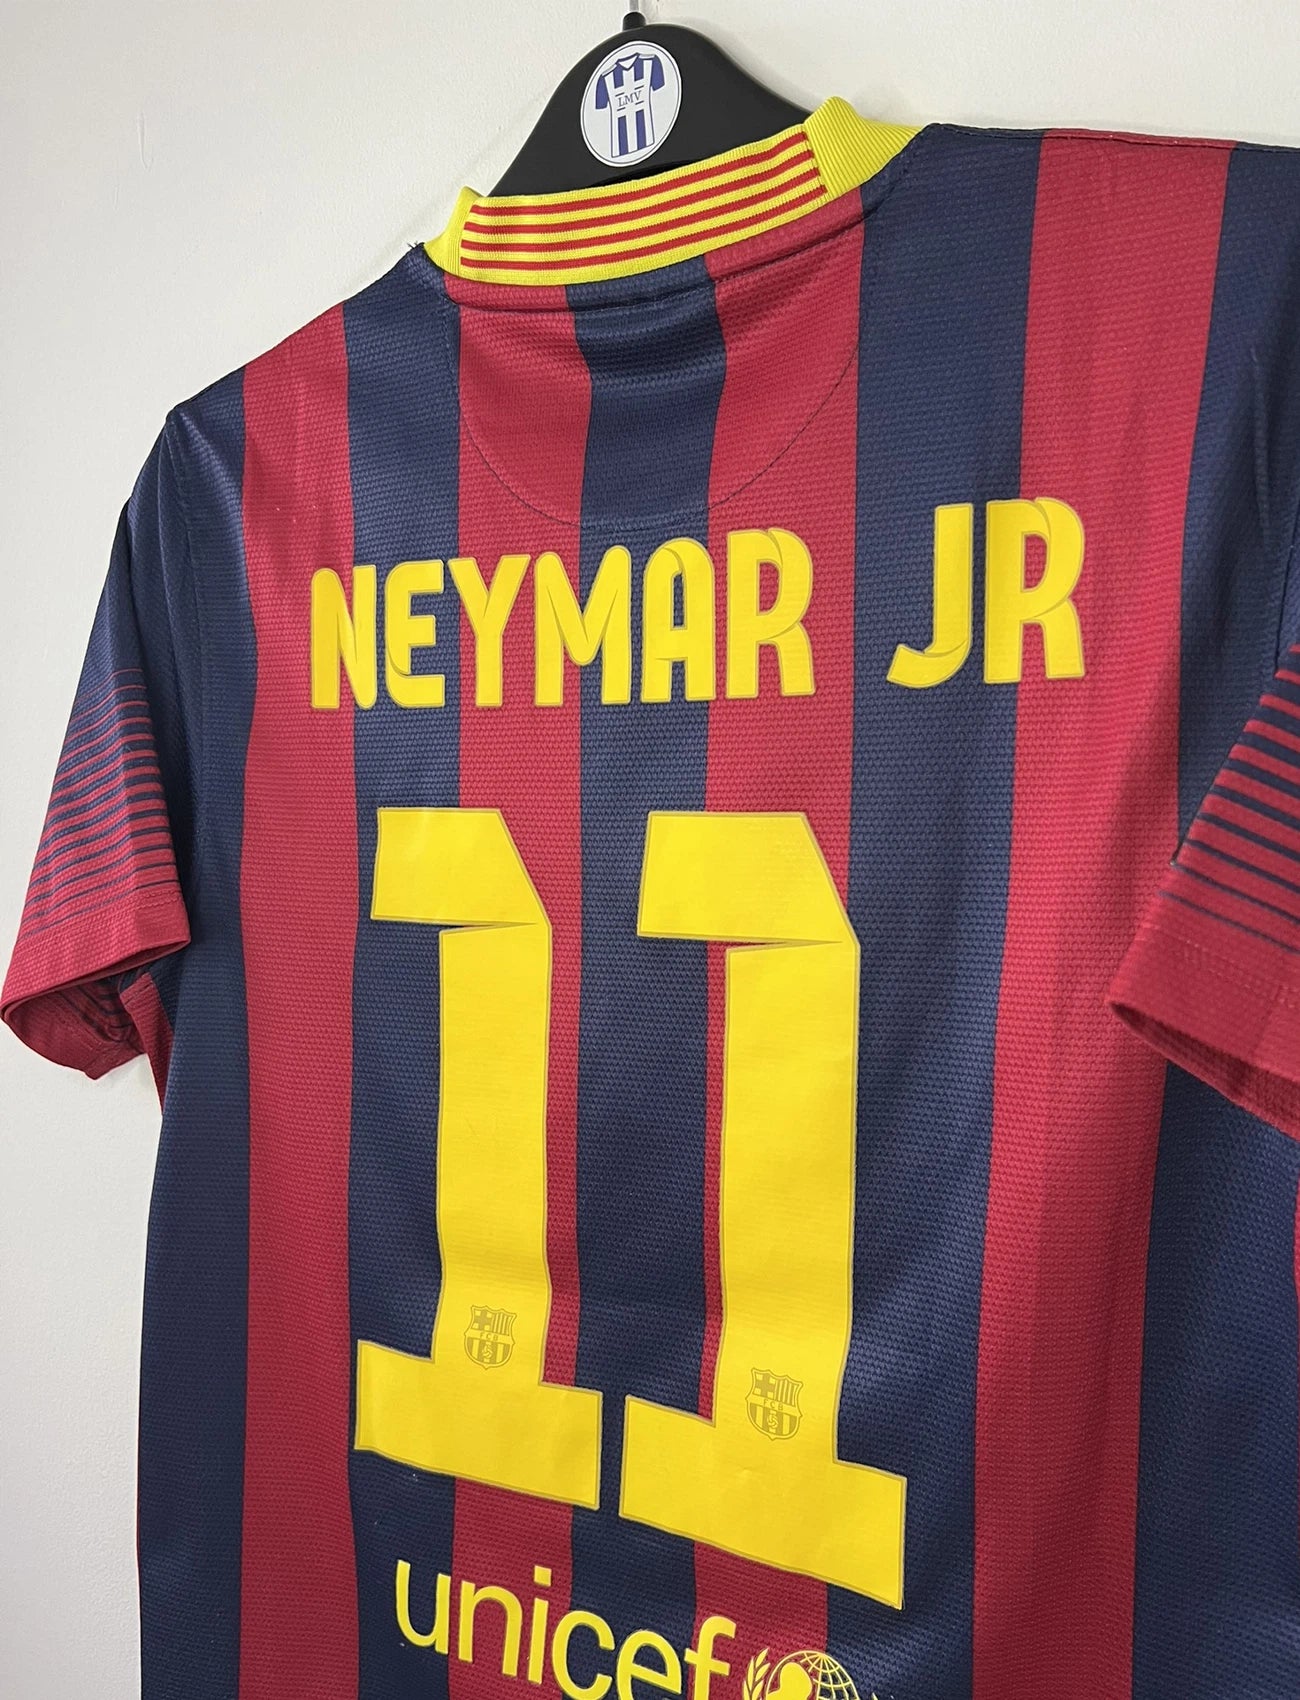 Maillot de foot vintage domicile du FC Barcelone de la saison 2013/14. Le maillot est de couleur rouge et bleu. On peut retrouver l'équipementier nike et le sponsor Qatar Airways. Le maillot est floqué du numéro 11 Neymar. Ils s'agit d'un maillot authentique comportant les numéros 532822-413